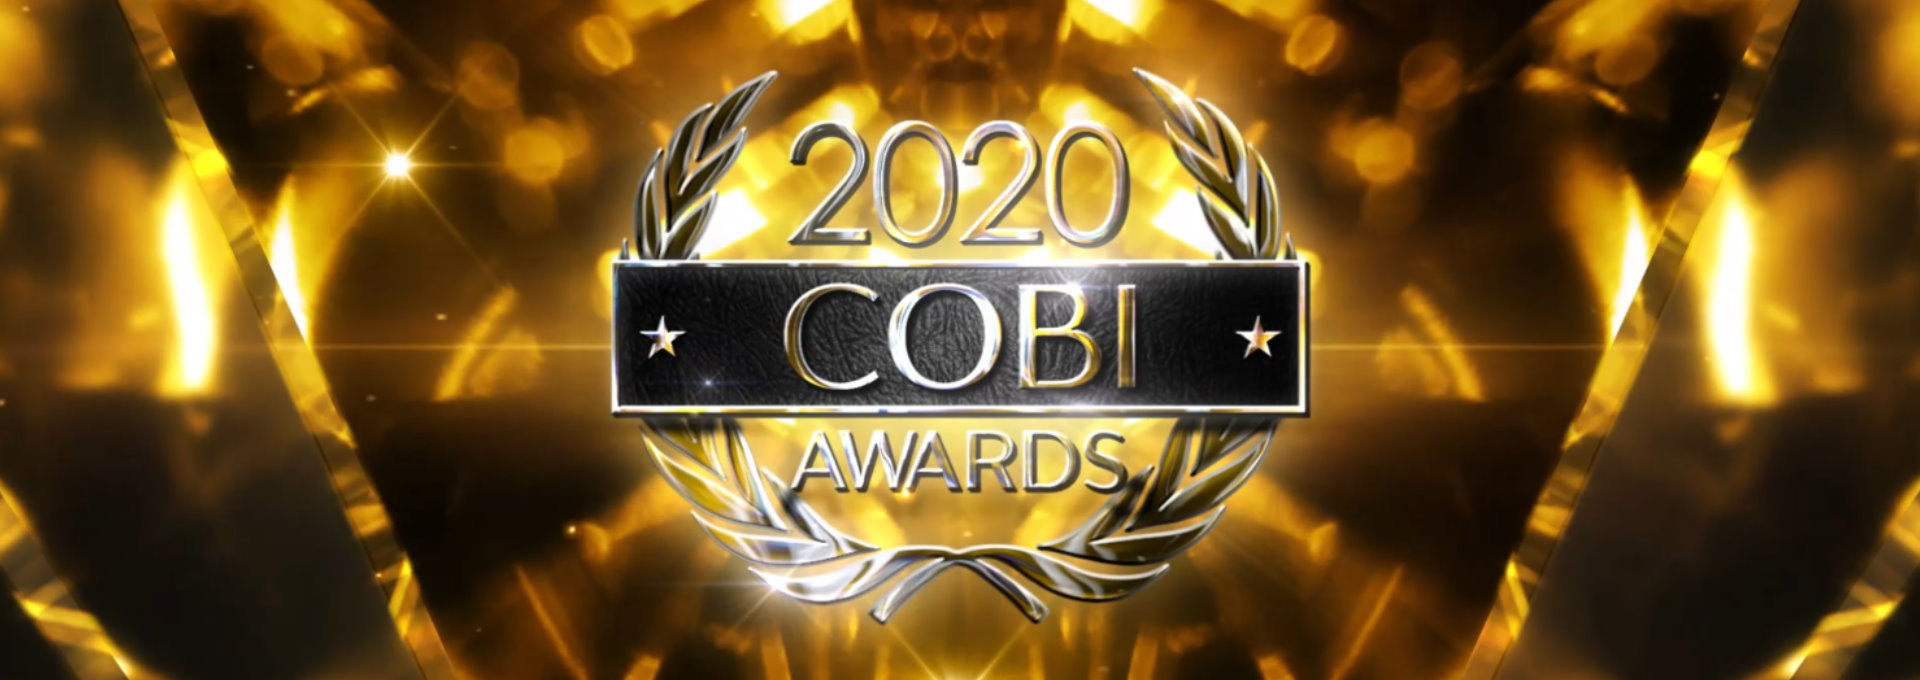 COBI 2020 AWARDS